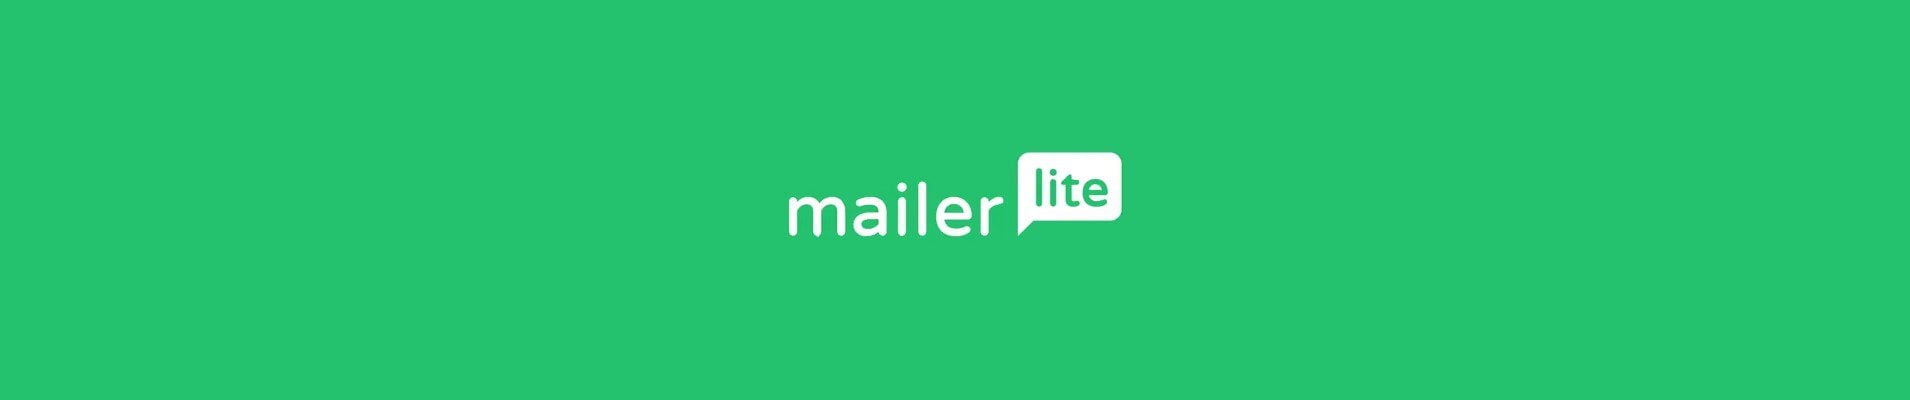 MailerLite Logomark